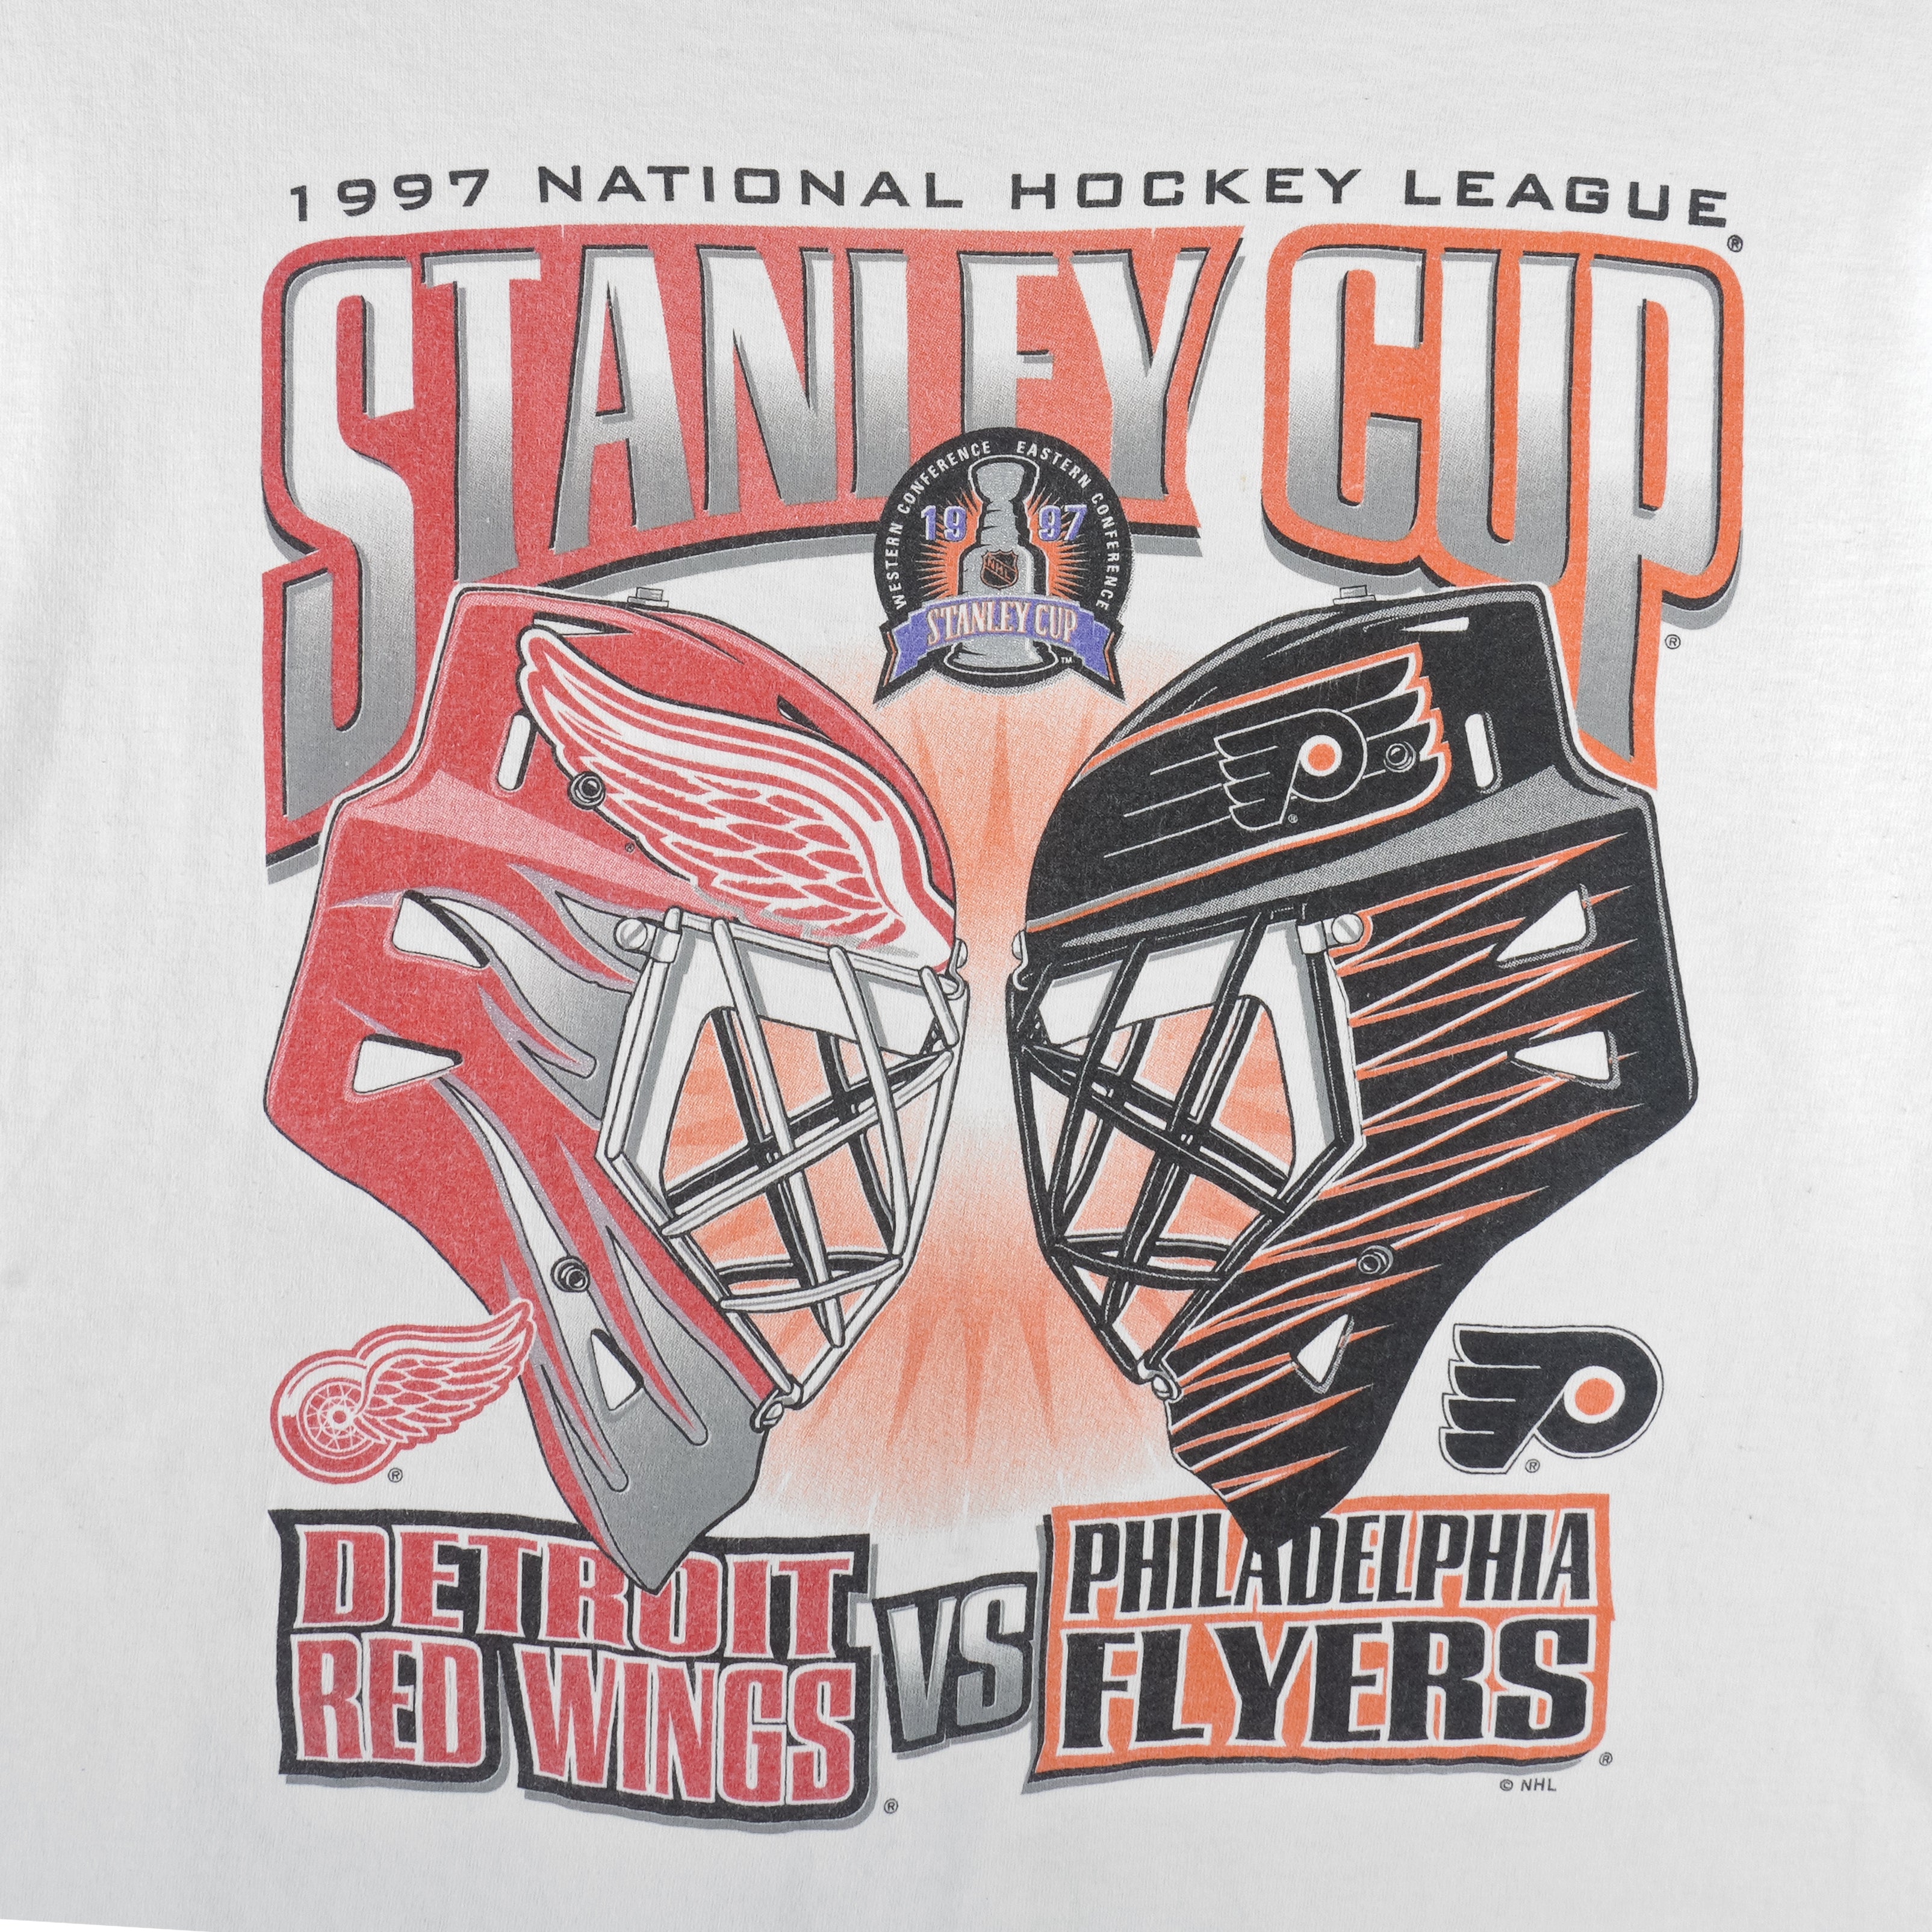 Detroit Red Wings Tshirt Vintage Goalie Mask Red NHL Hockey 